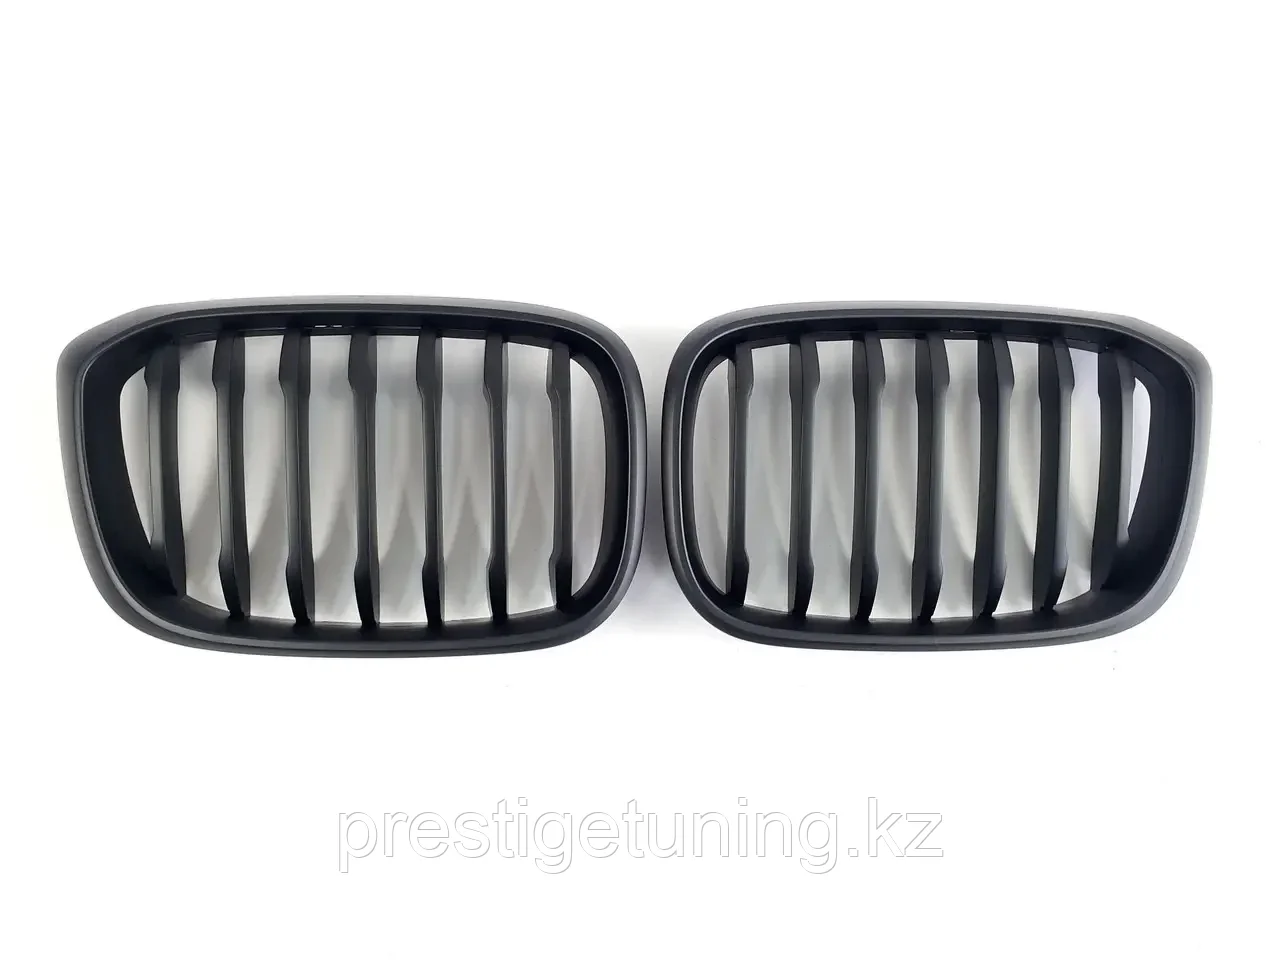 Решетка радиатора на BMW X3 (G01) 2017-21 тюнинг ноздри (Черный цвет)